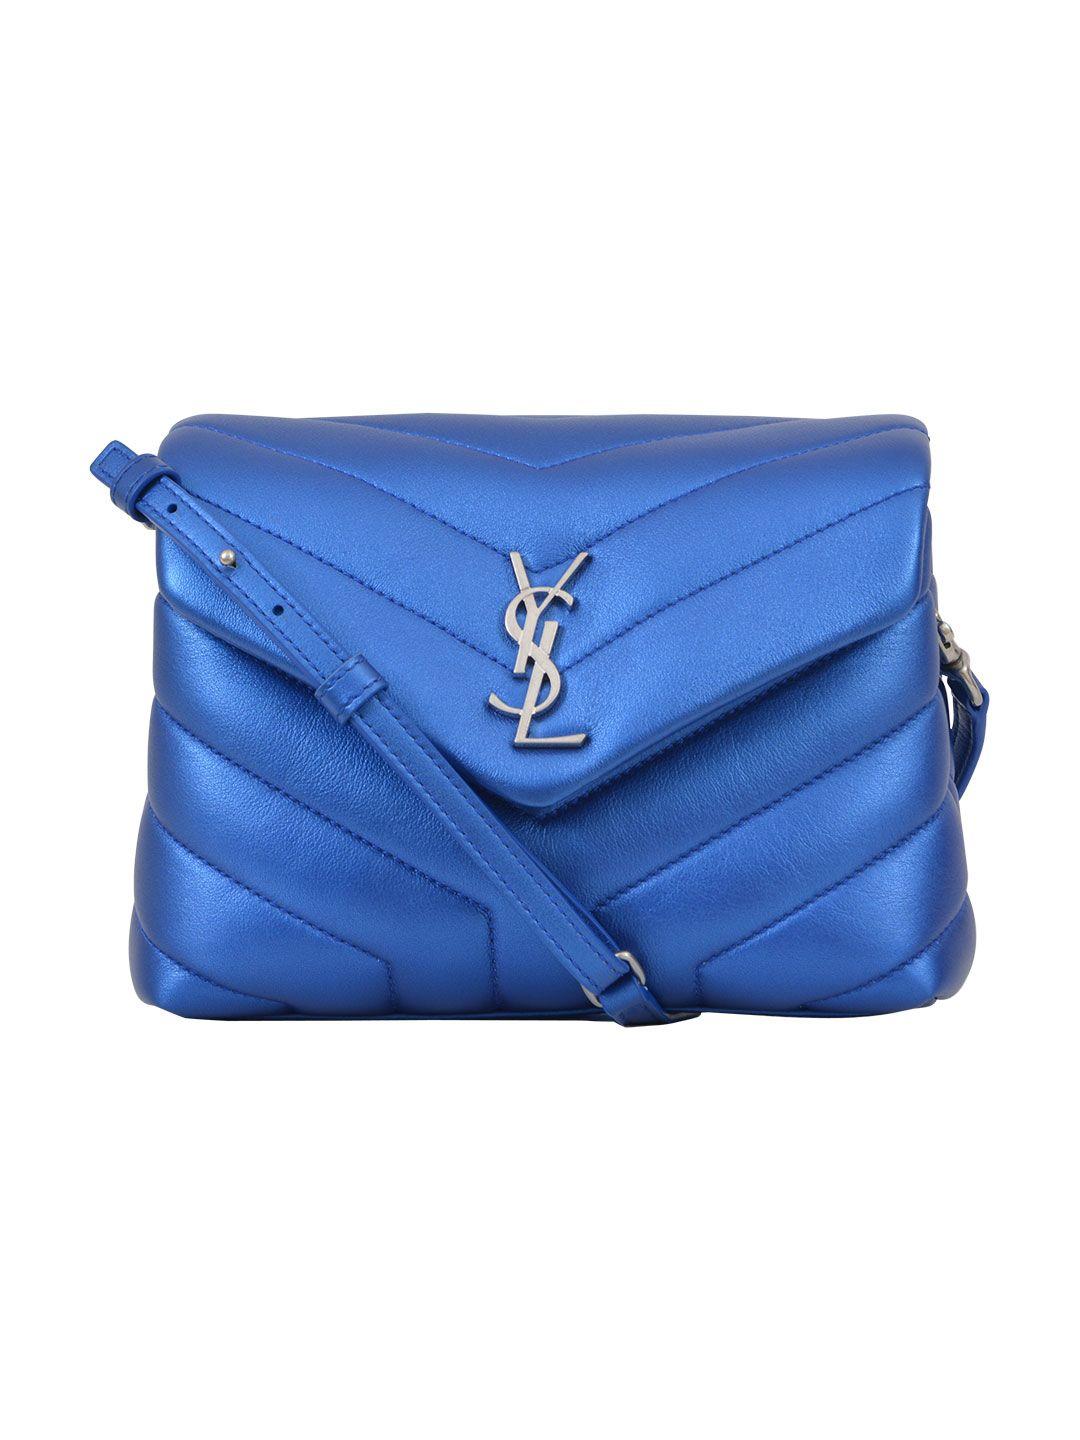 Saint Laurent Toy Loulou Bag In Bluette | ModeSens